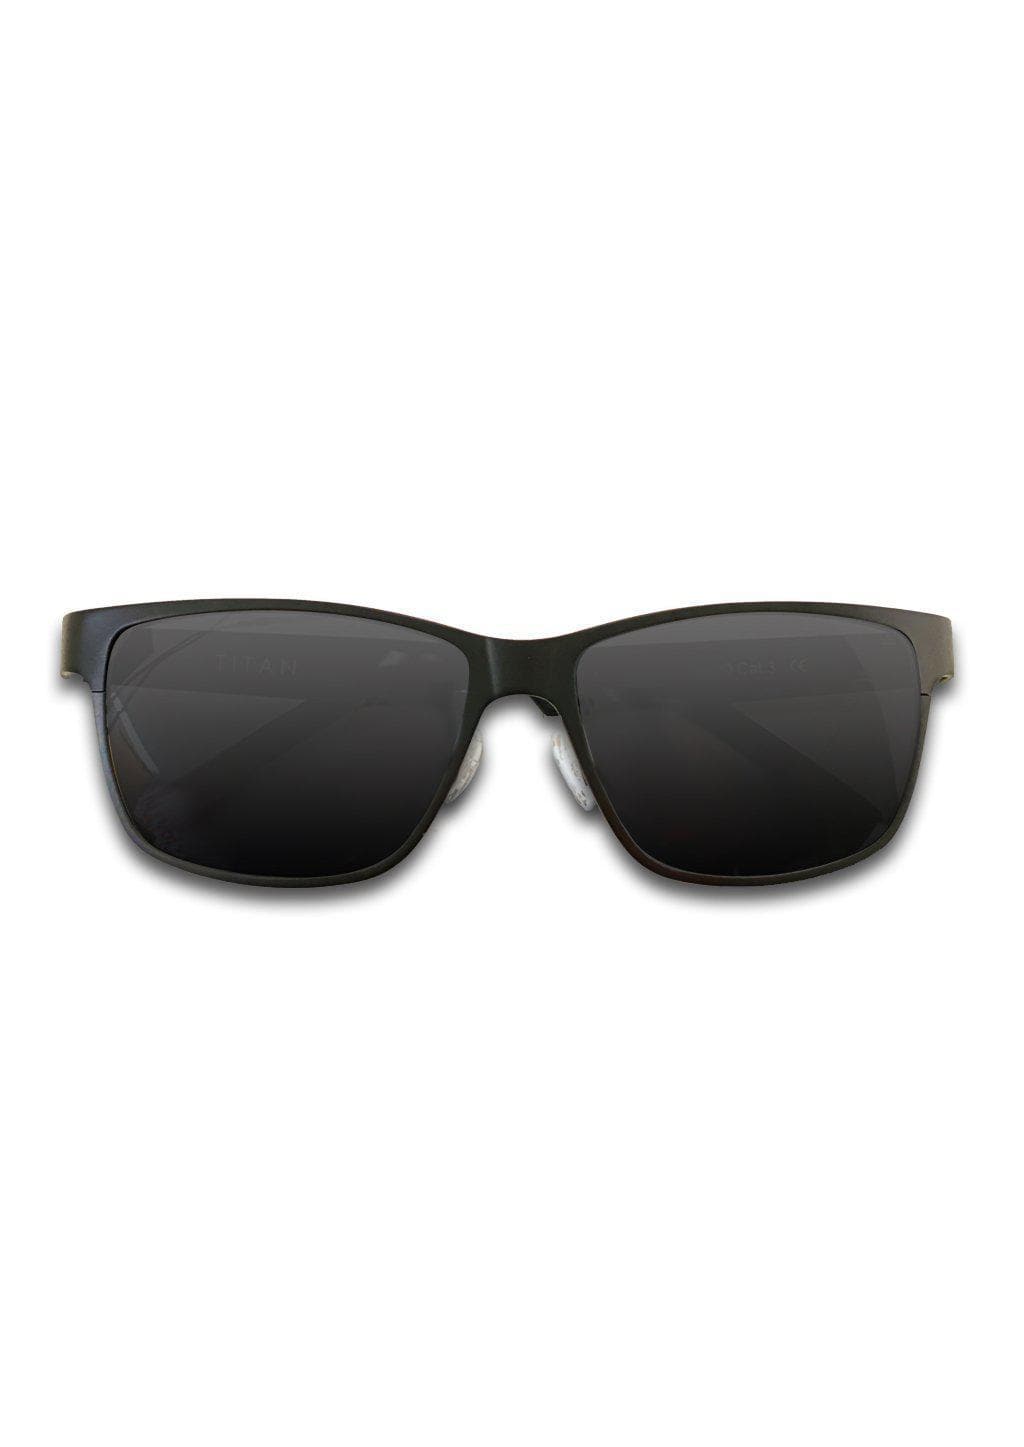 Titanium Wayfarer Sunglasses - TITAN 